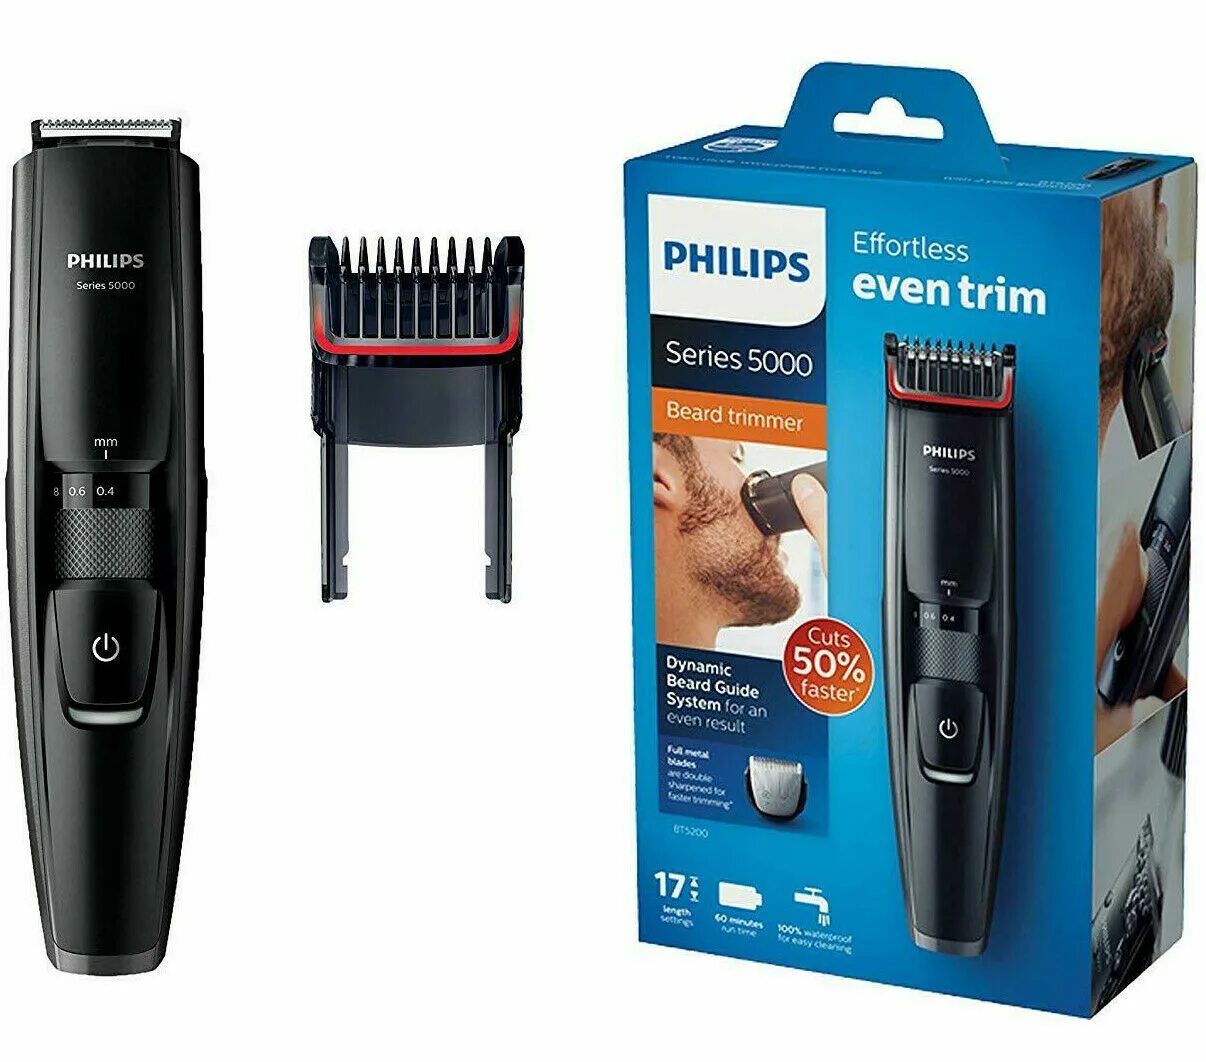 Philips bt5200. Триммер Philips bt5200. Philips Beard Trimmer 5000. Philips Series 5000 bt5200/16. Купить филипс 5000